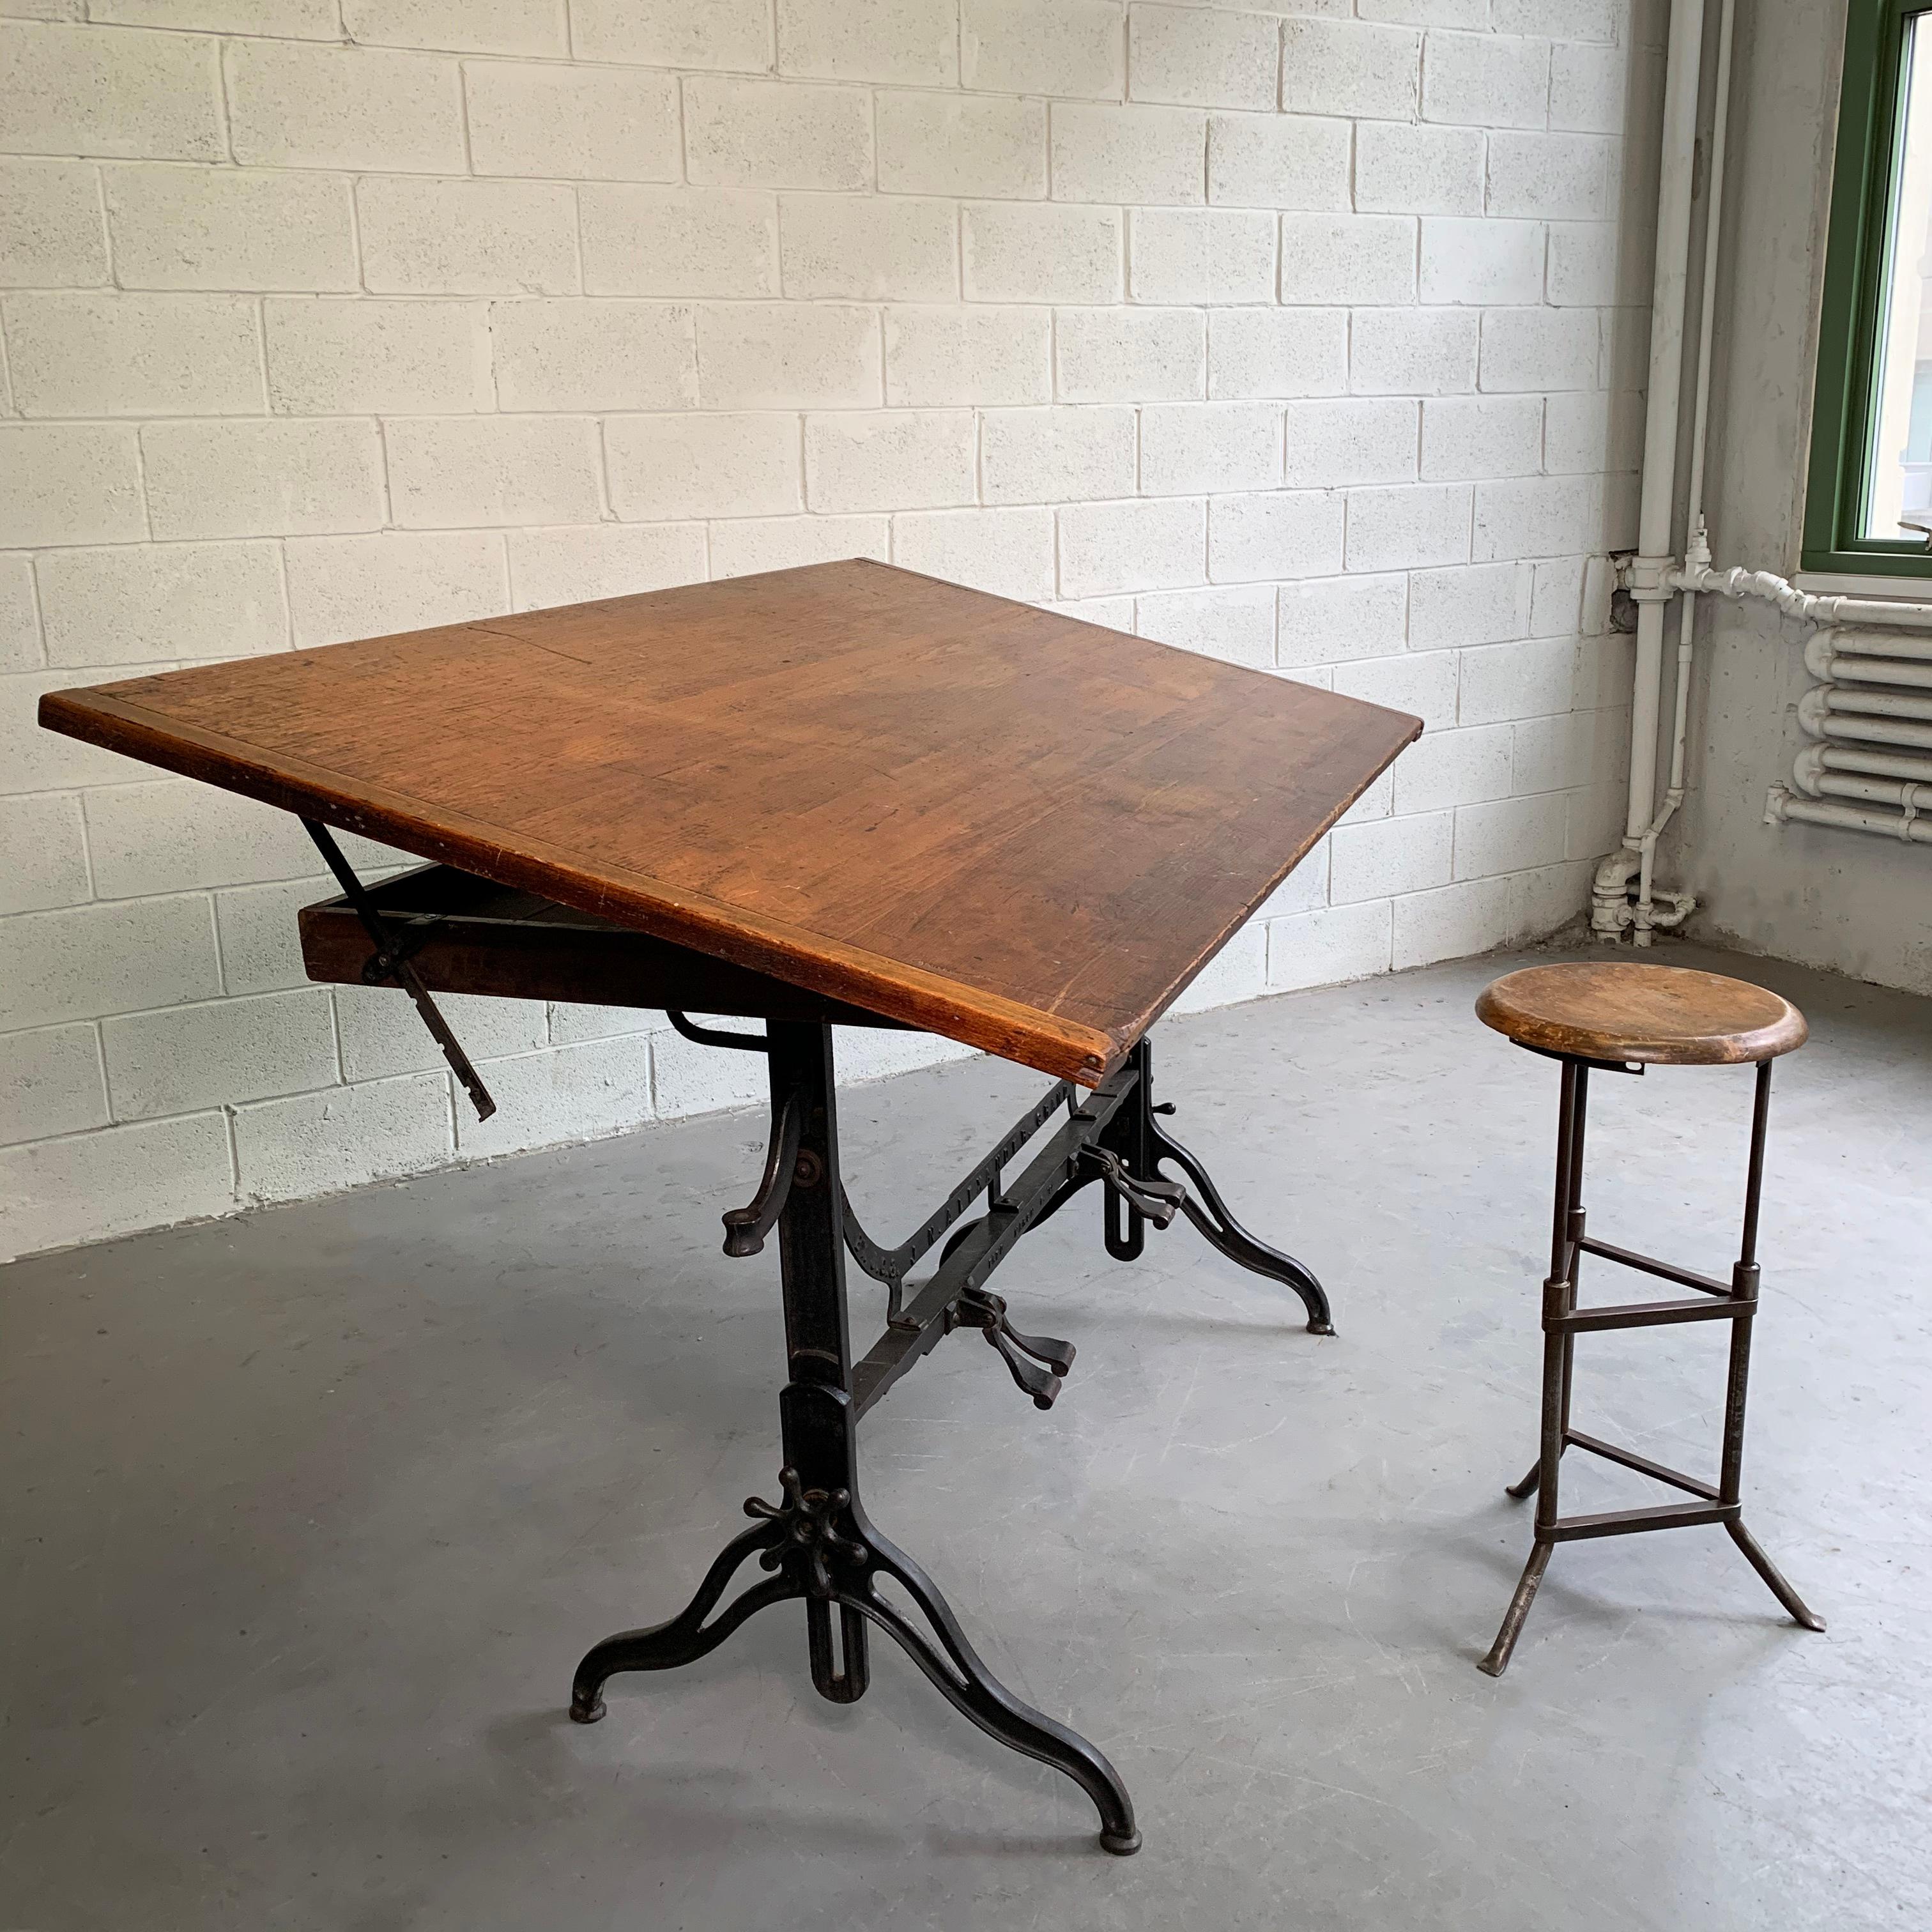 North American Antique Industrial Adjustable Drafting Table by J.G. & J.N. Alexander